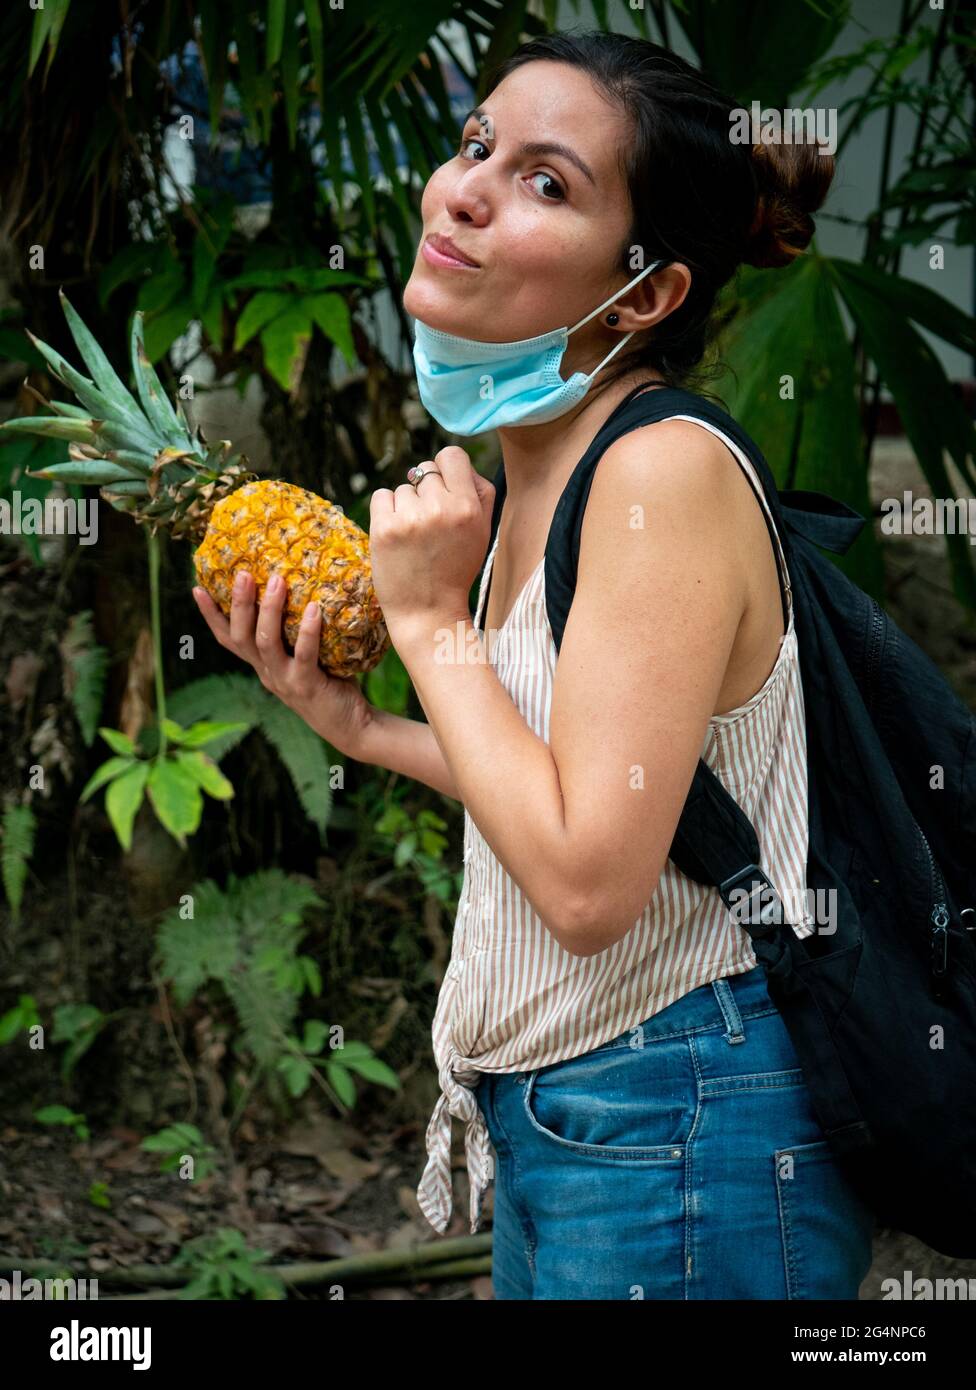 Une femme latine avec un masque sous sa bouche regarde l'appareil photo  avec un ananas dans sa main droite Photo Stock - Alamy